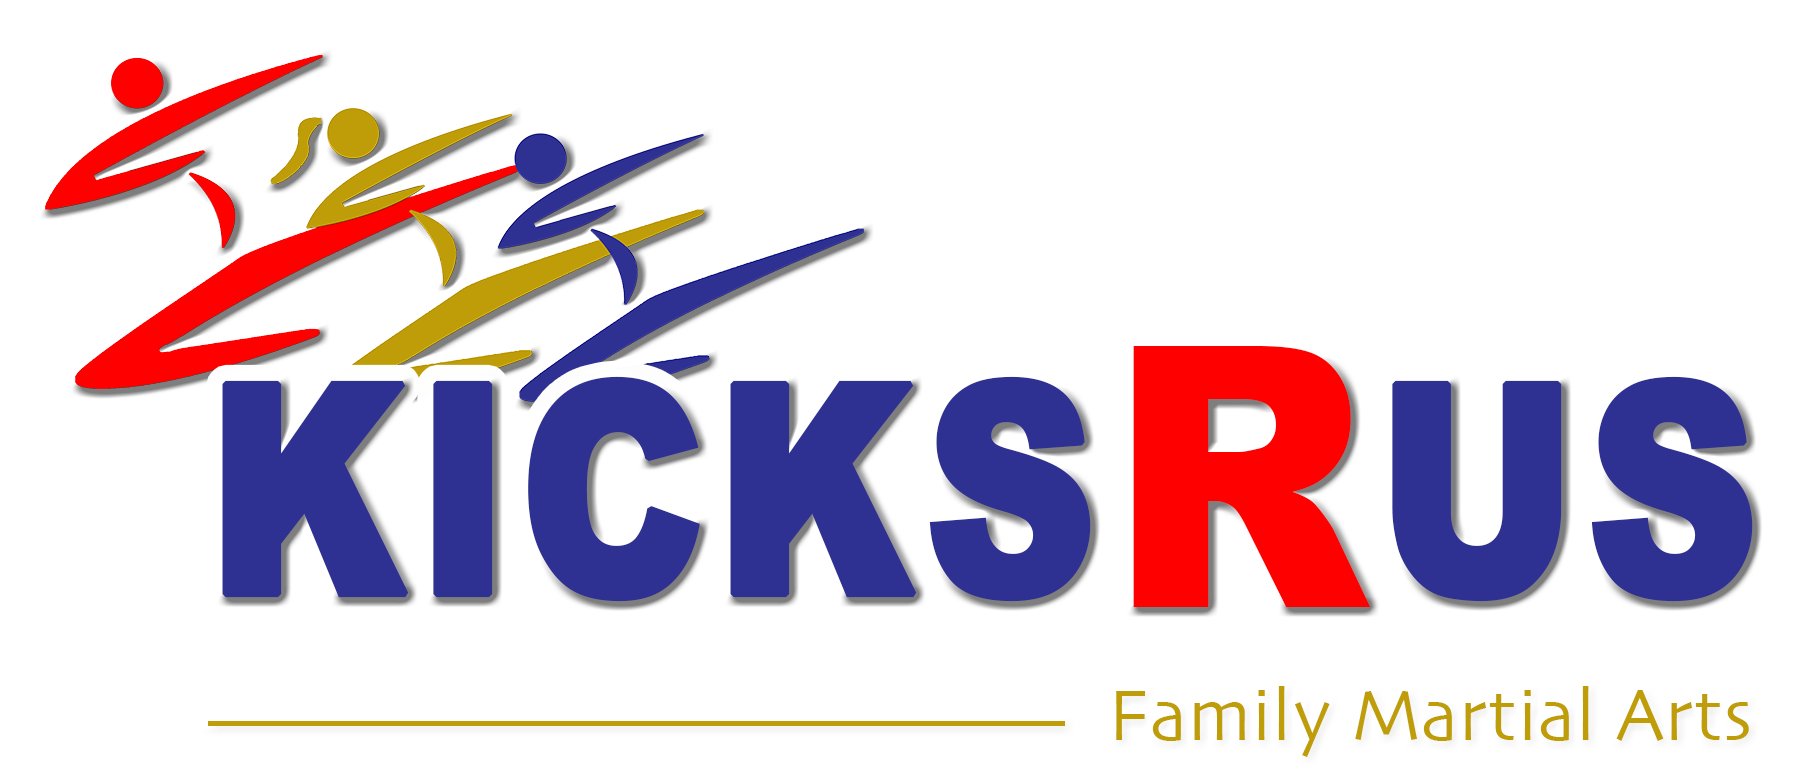 Kicks R Us logo